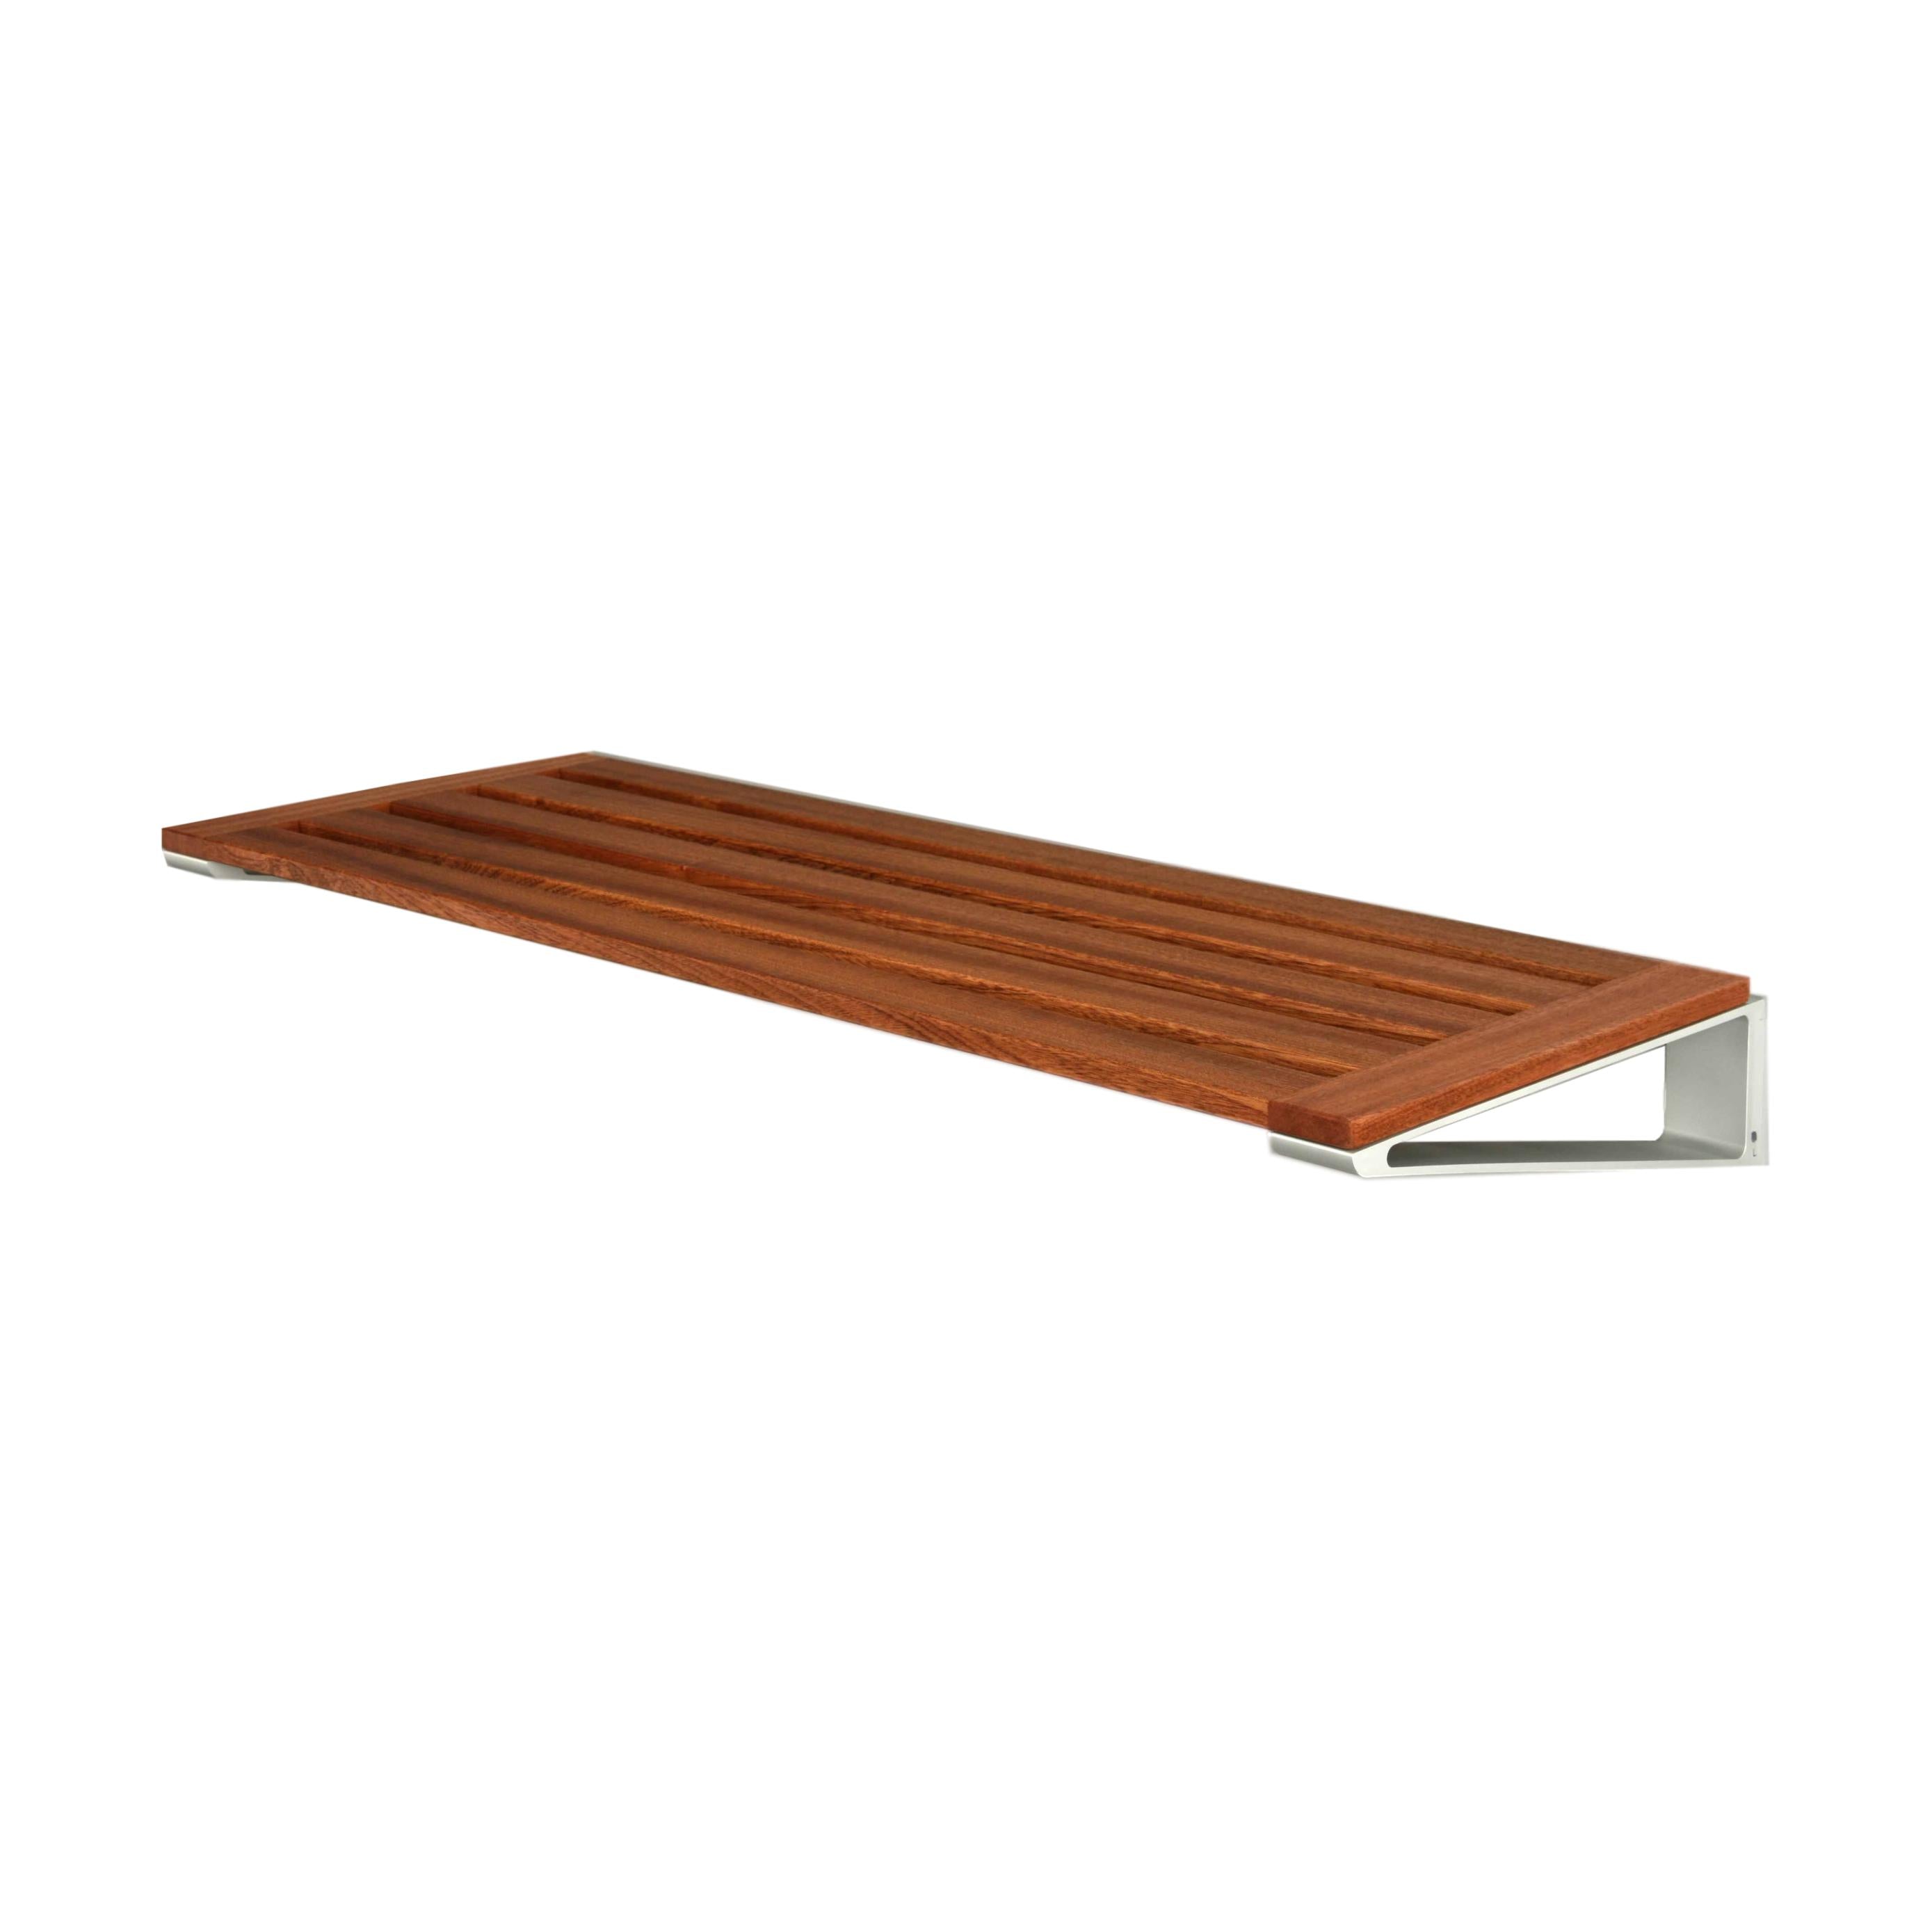 Loca Knaxsko rack 60 cm, mahogny/aluminium